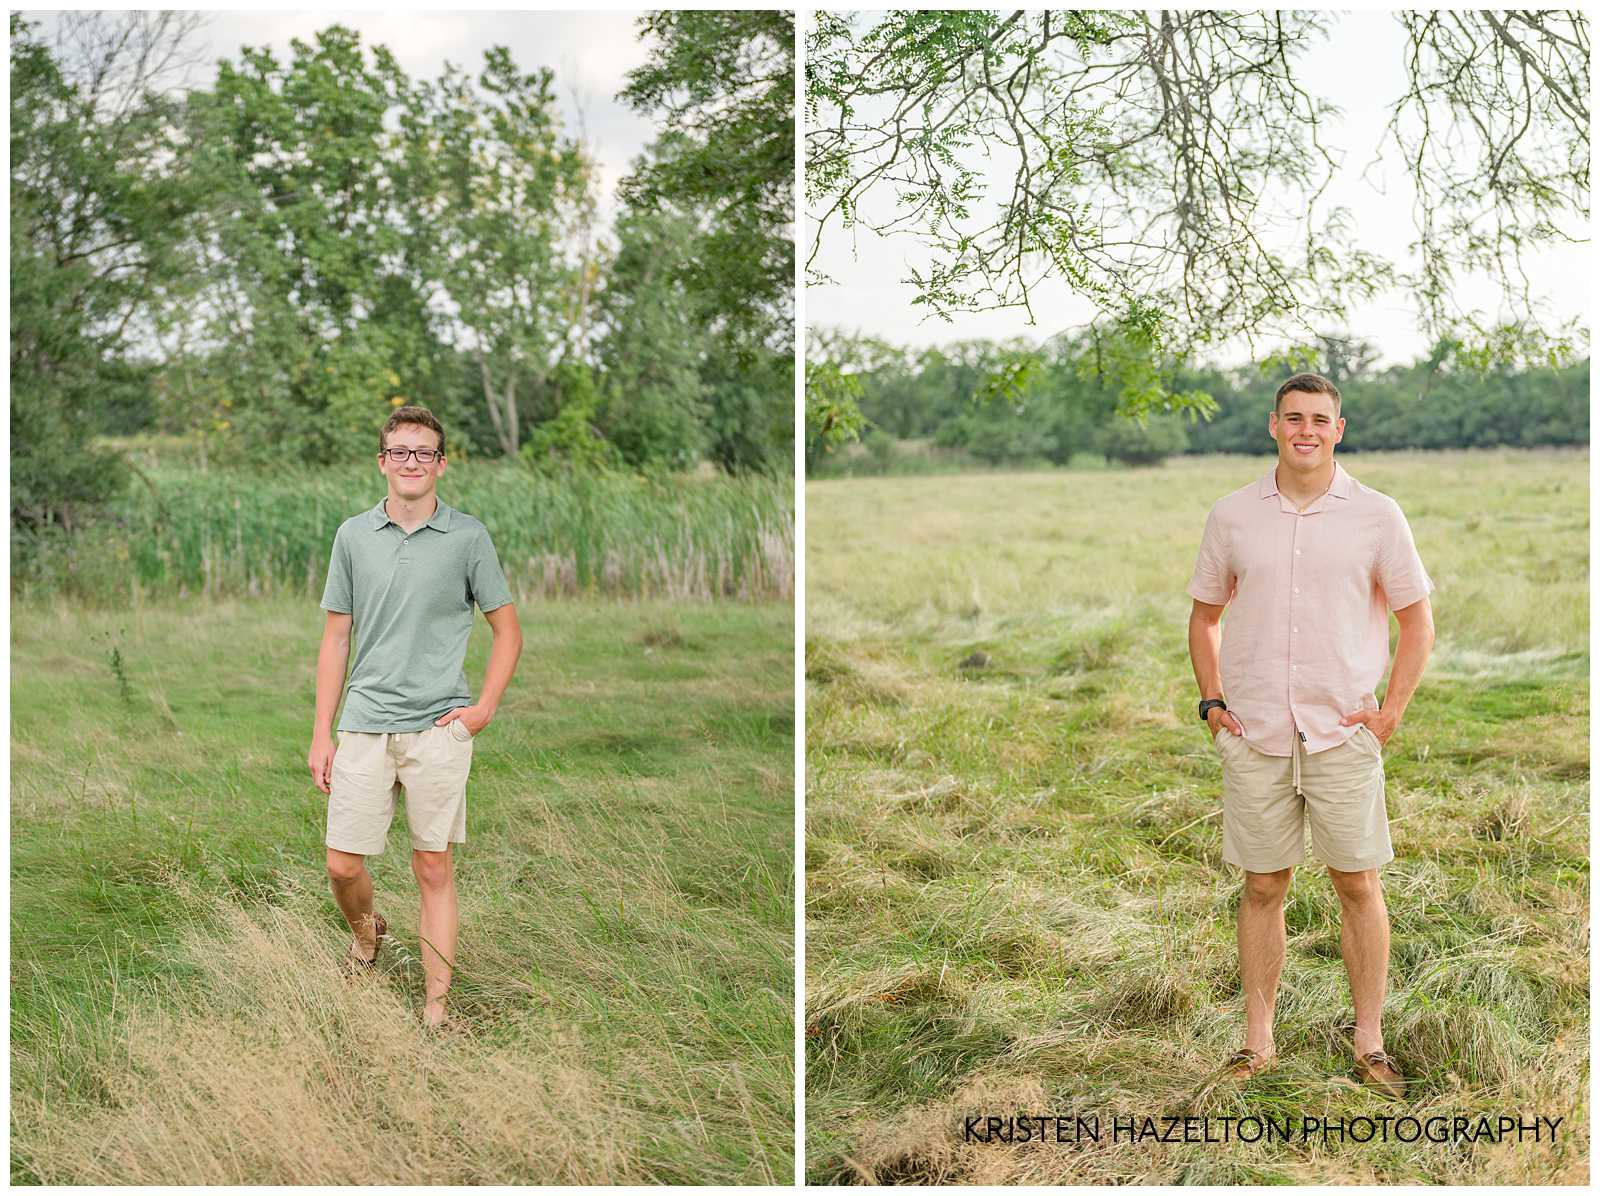 Teenage boys standing in a field